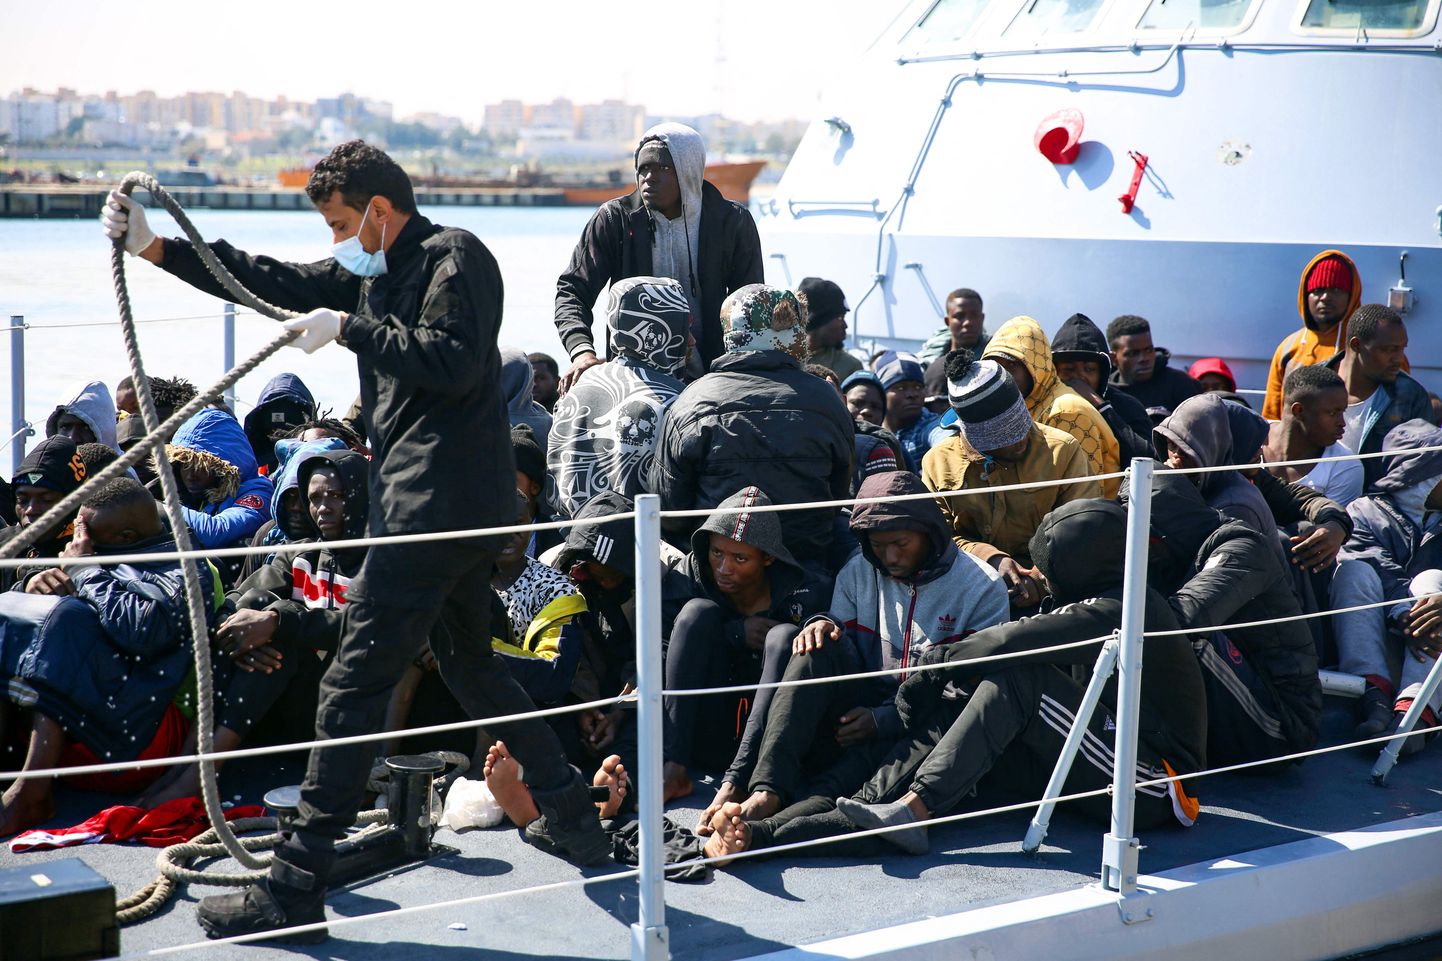 Ligi sada migranti päästeti pühapäeval Liibüa lääneranniku lähedal, kui nende katse Euroopasse jõuda ebaõnnestus